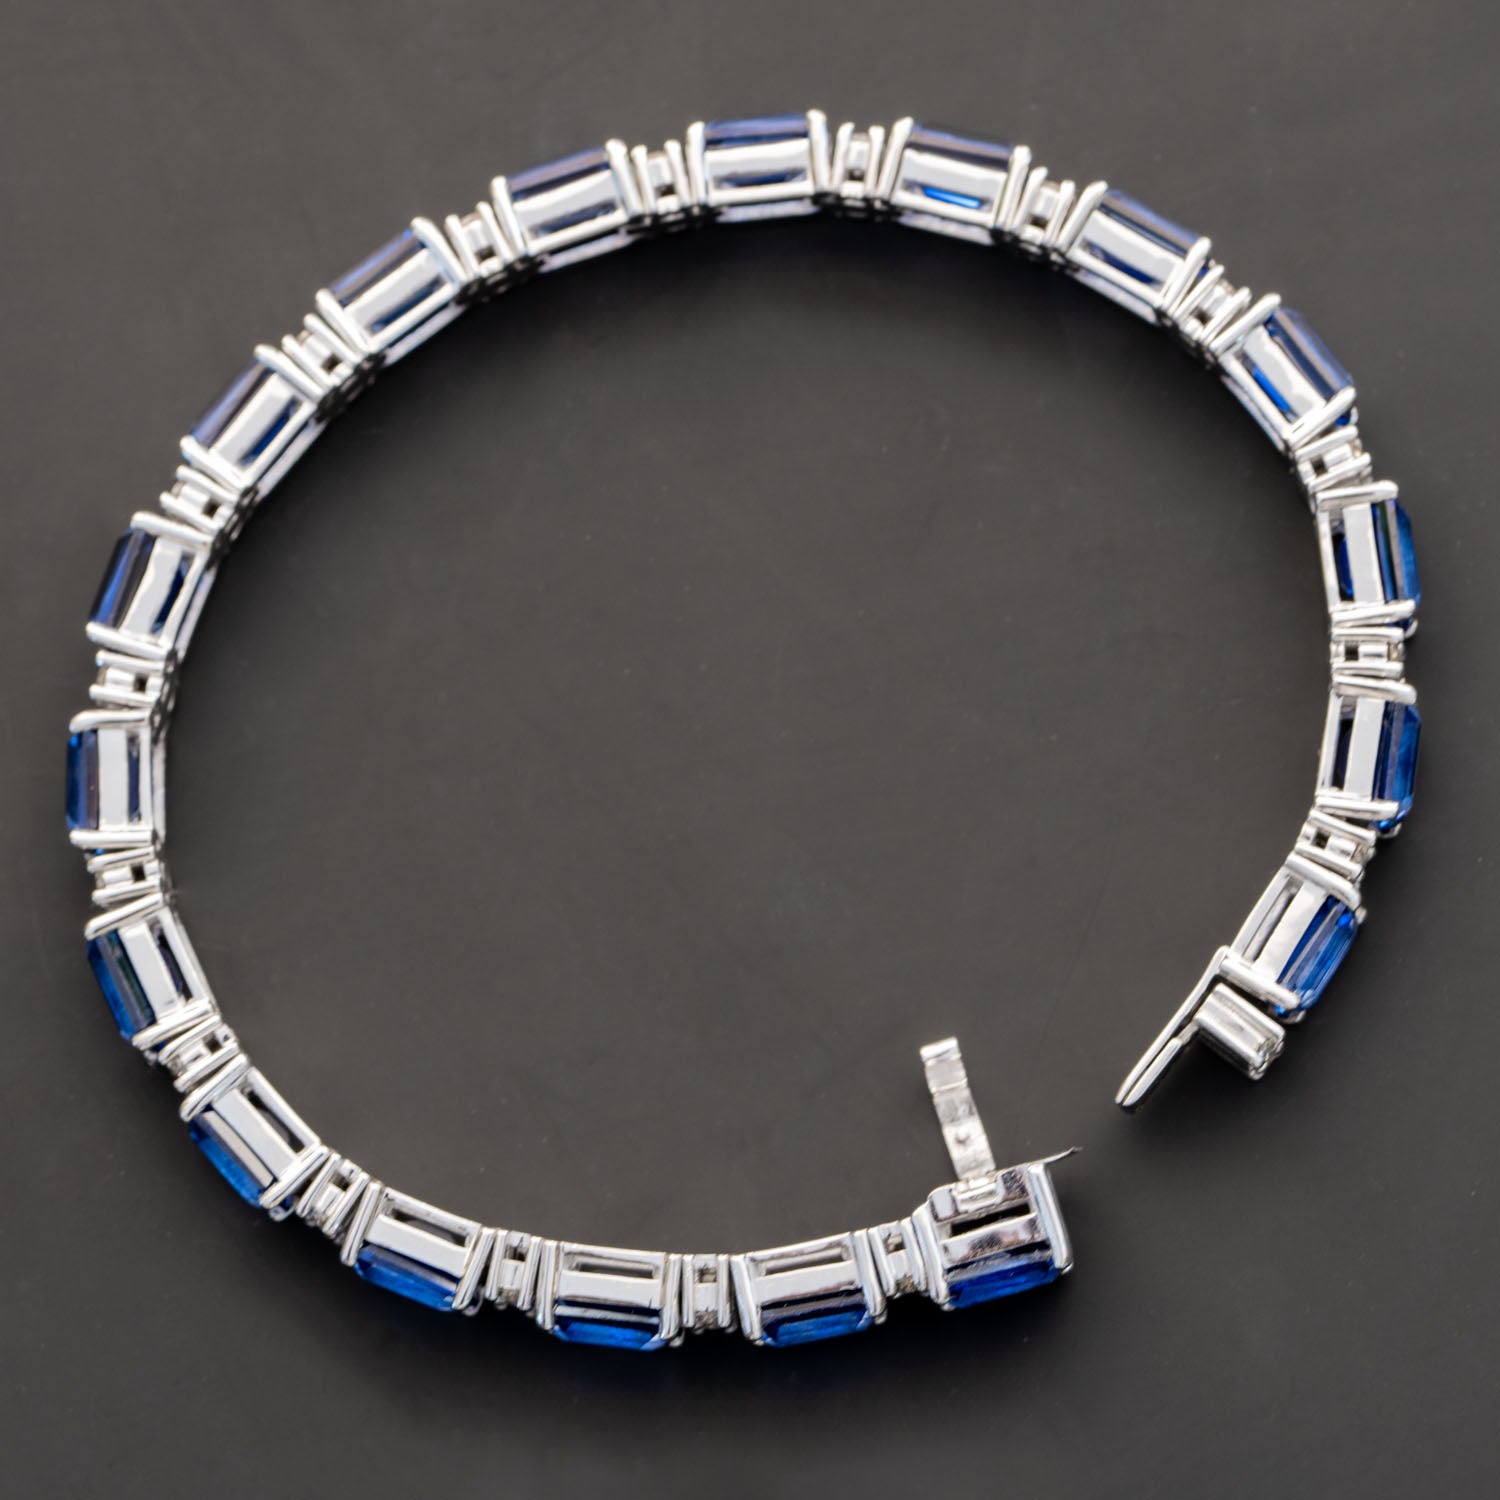 LOUIS VUITTON Clackant Bracelet Diamond Sapphire Q95208｜Product  Code：2101213278625｜BRAND OFF Online Store